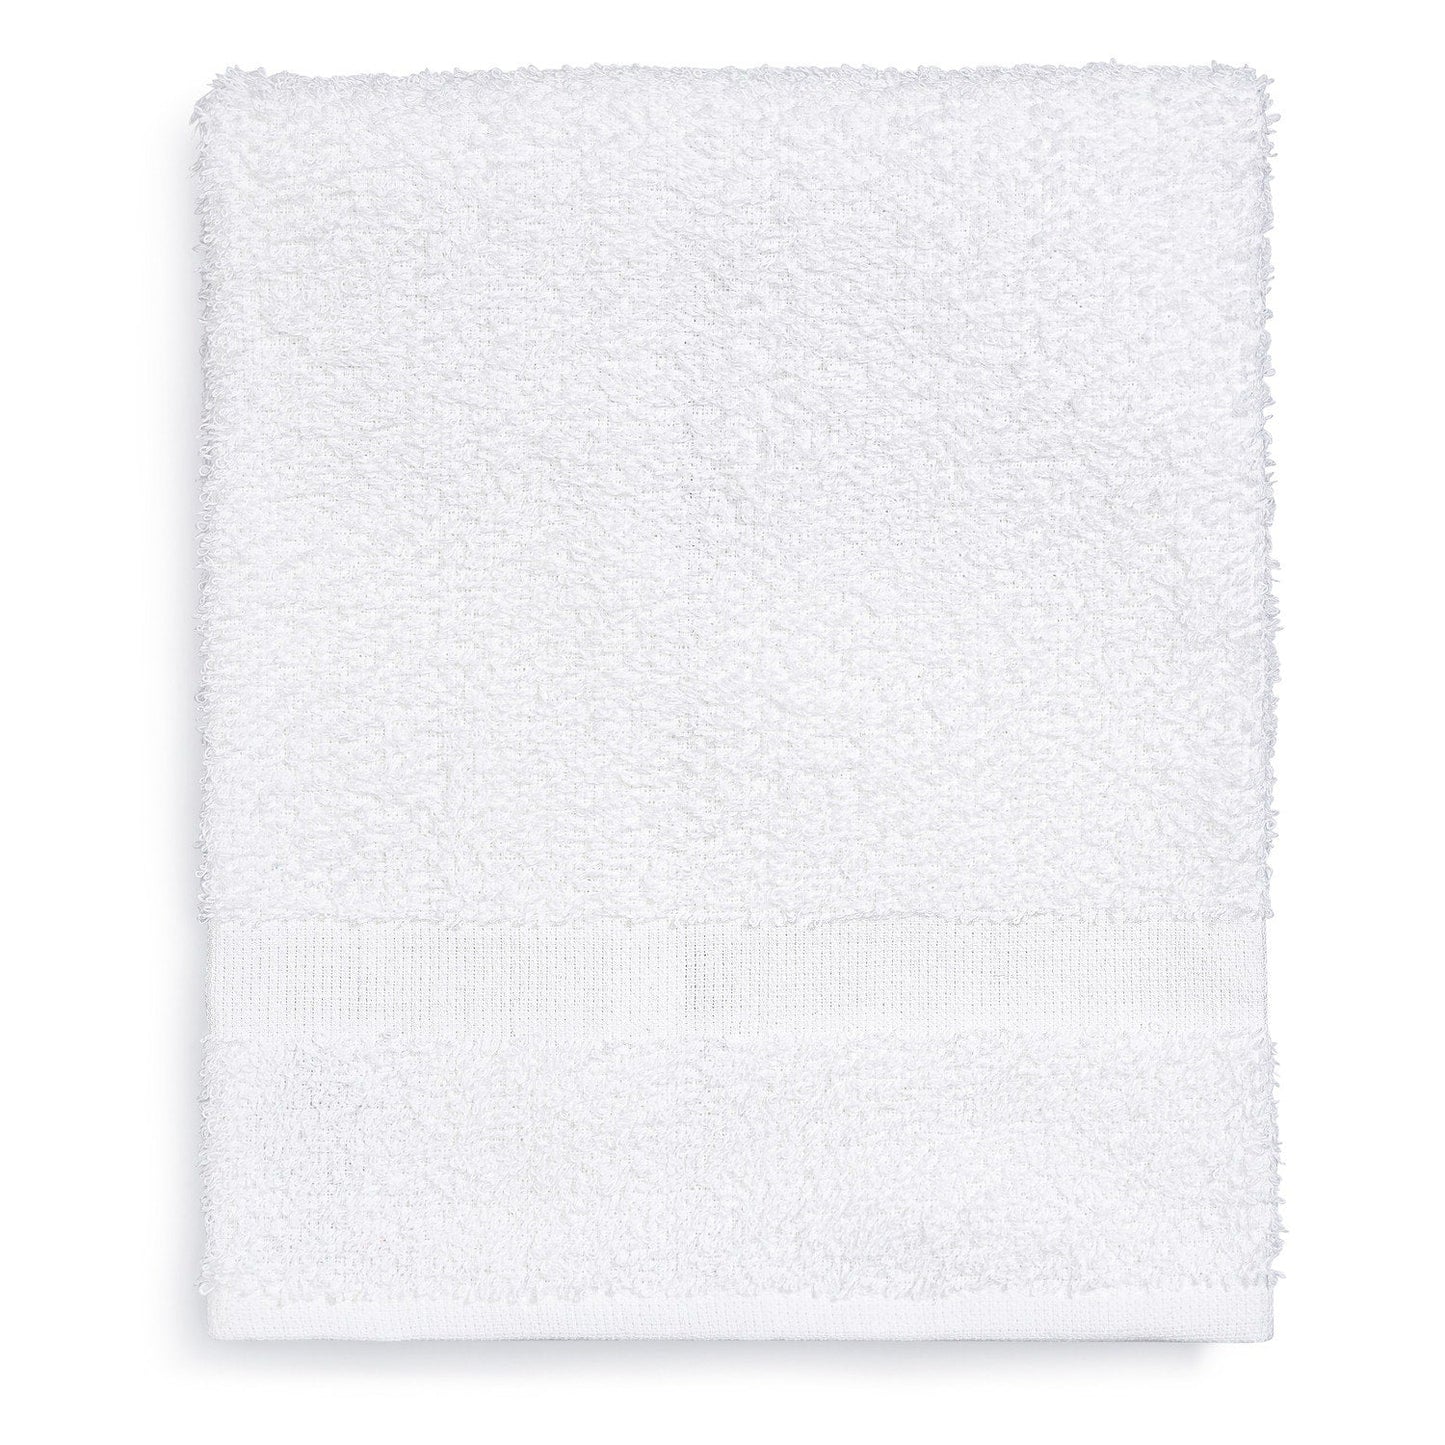 Platinum Hand Towel, 16"x27"-3 LBS, 15 DZ/cs